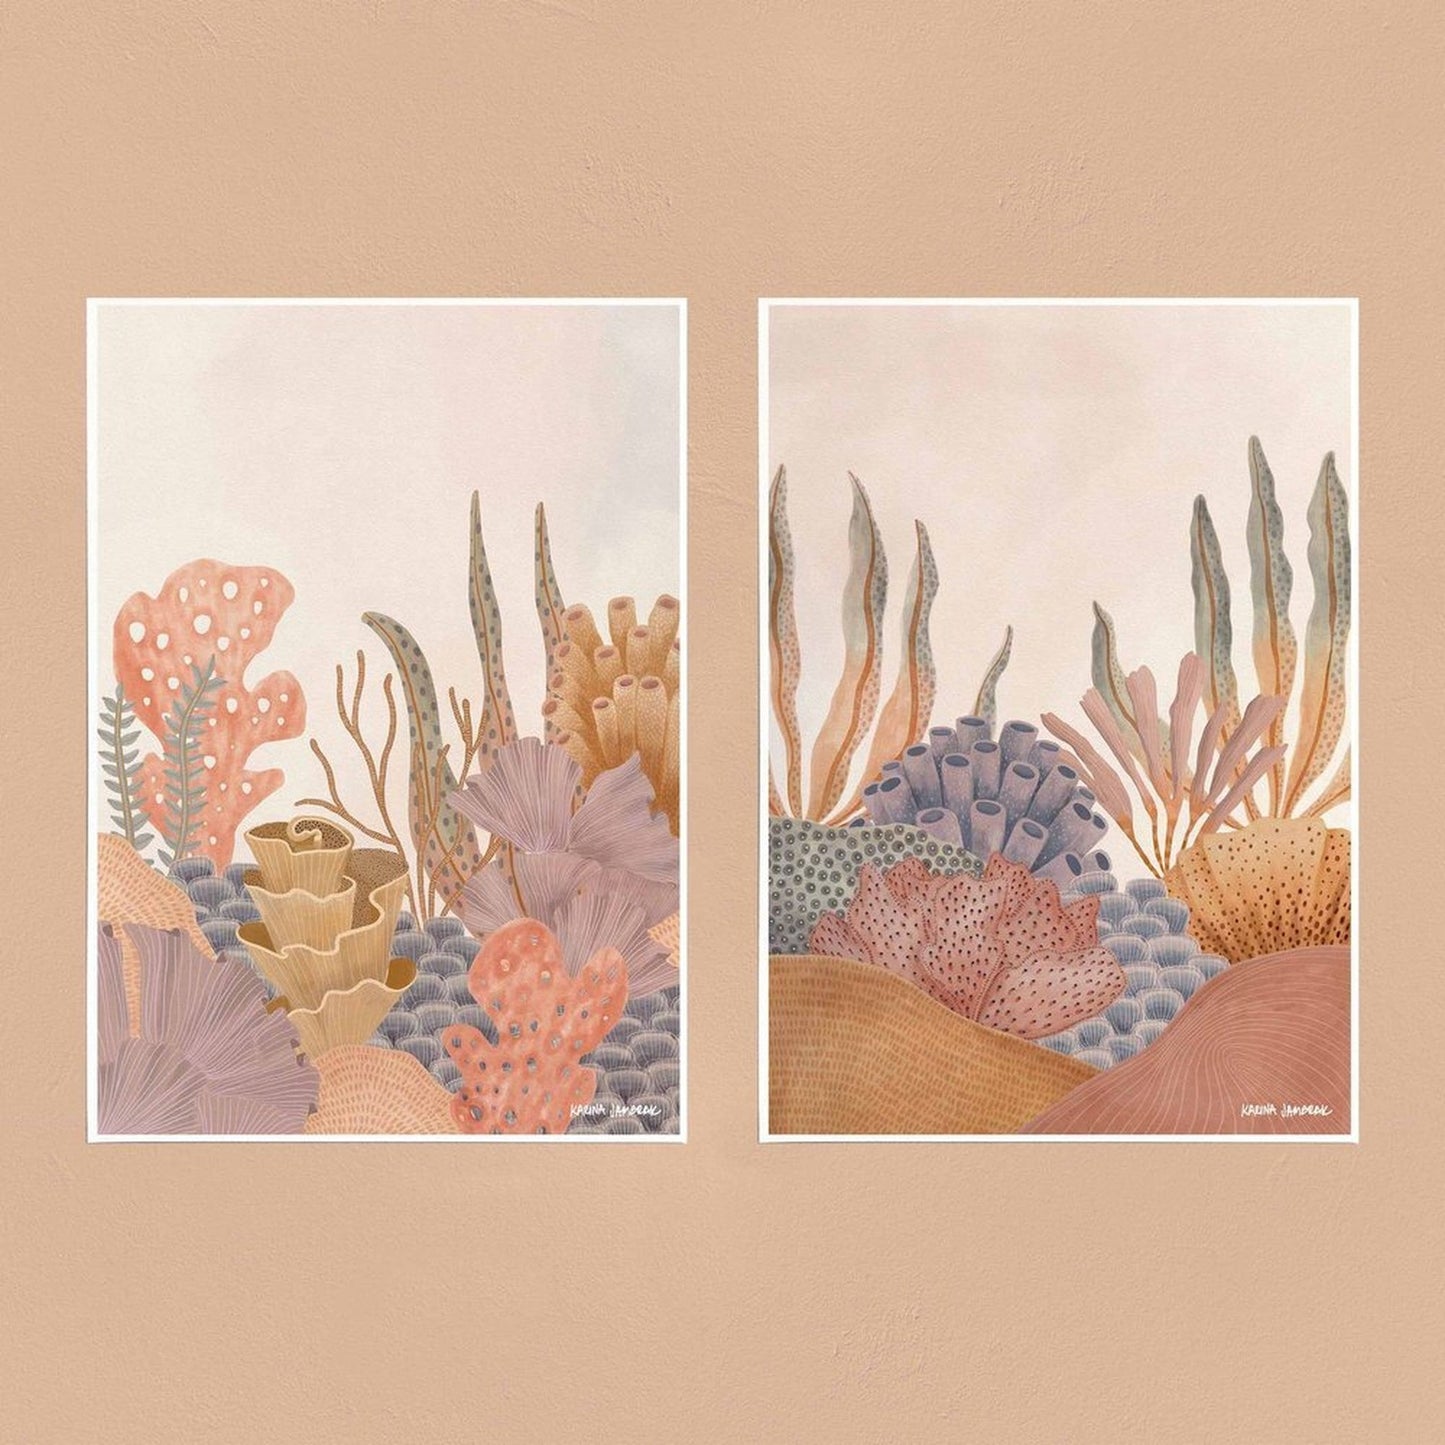 【sale】【karina jambrak art】pastel reef Ⅰ